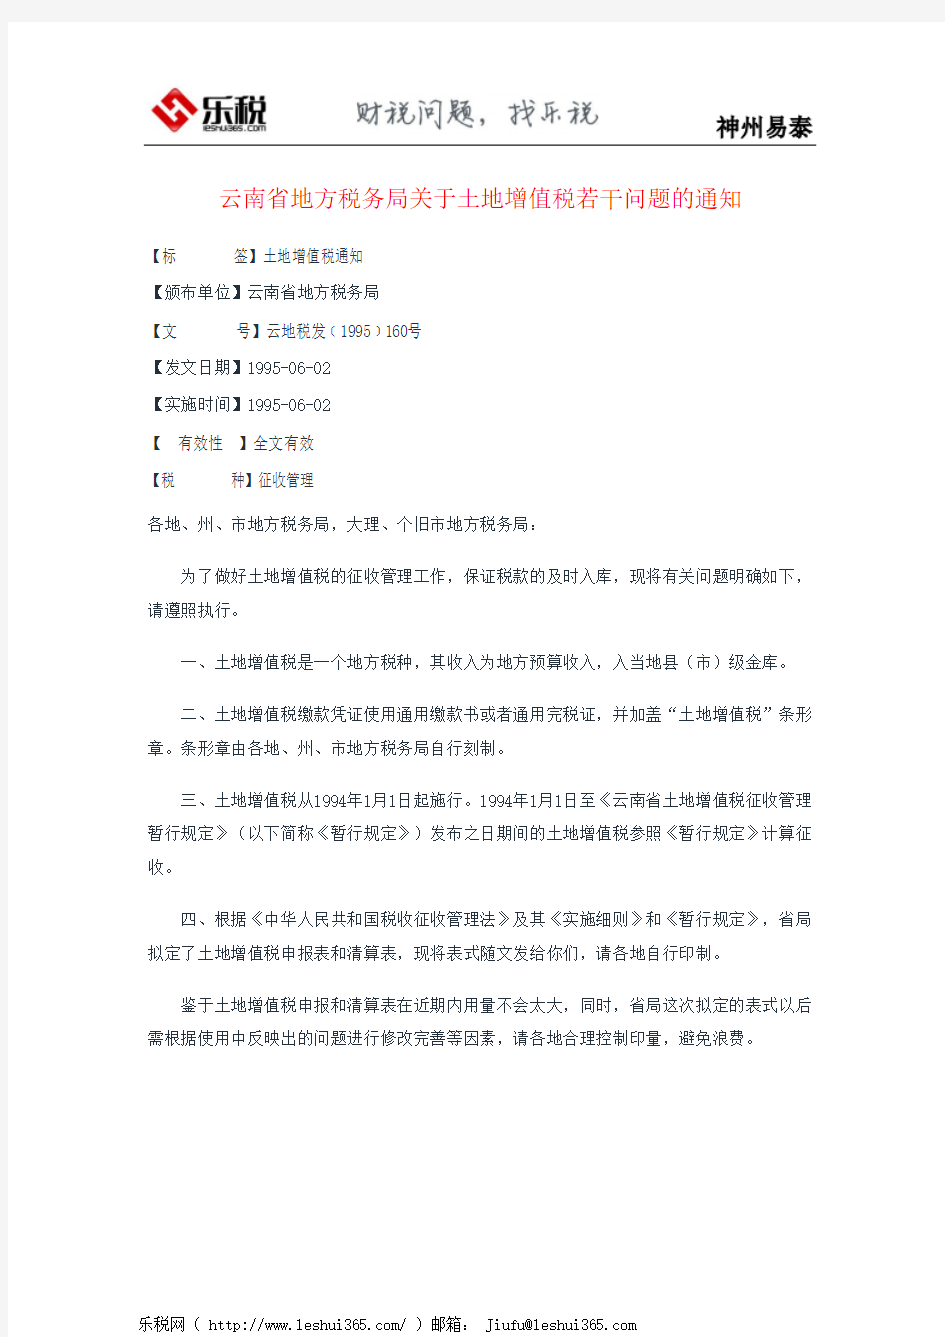 云南省地方税务局关于土地增值税若干问题的通知